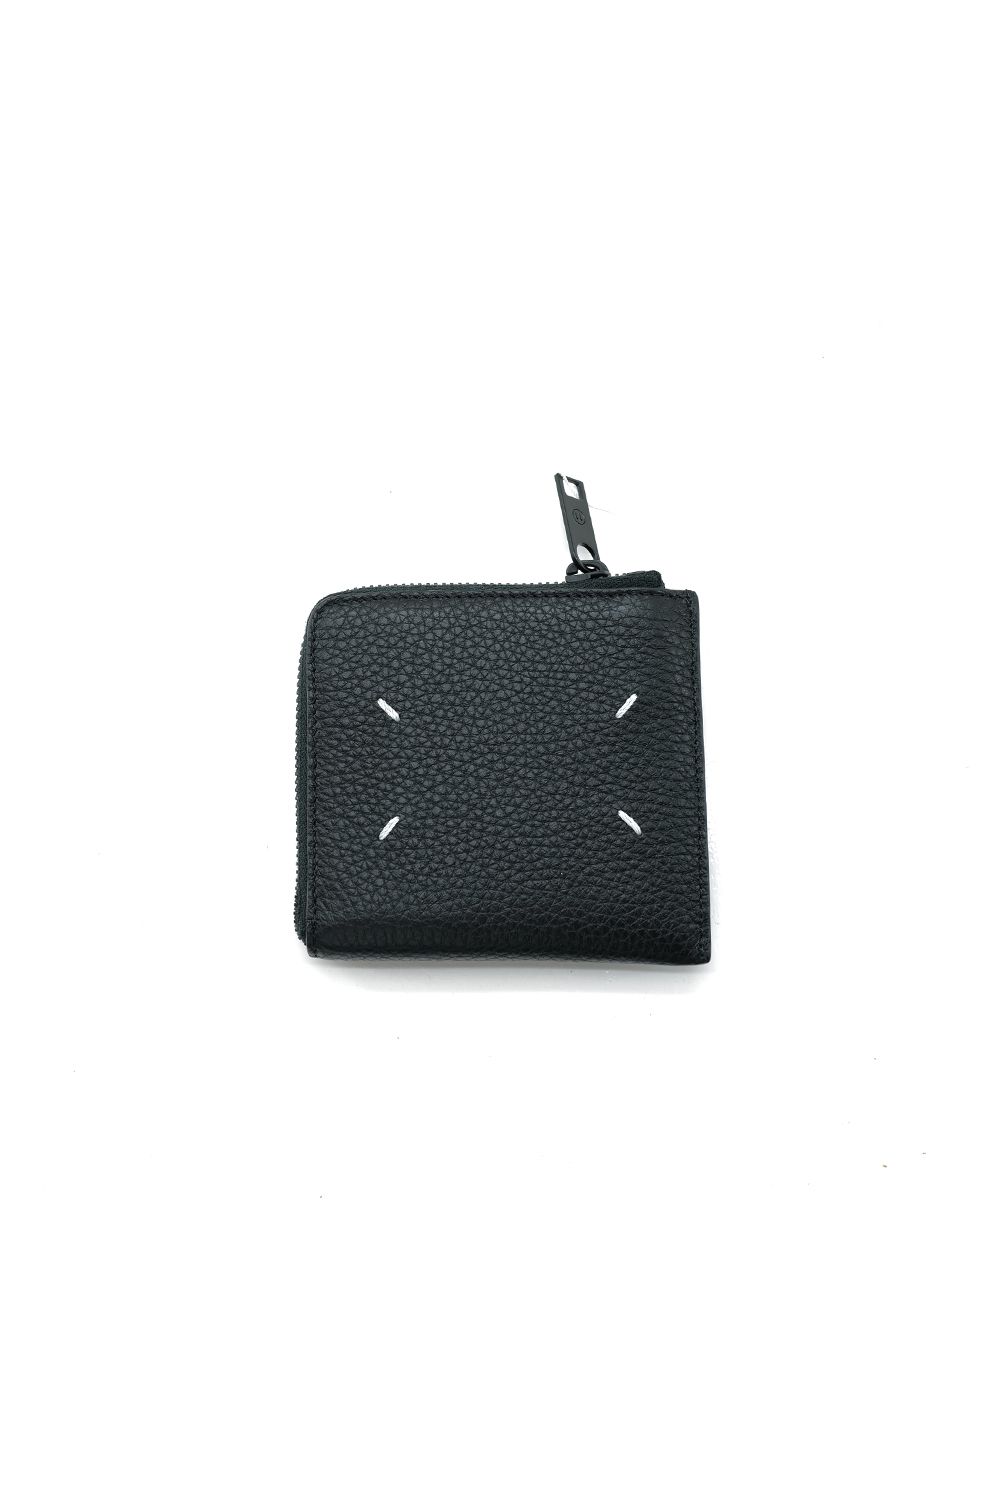 ラウンドファスナー財布 / Black - フリーサイズ